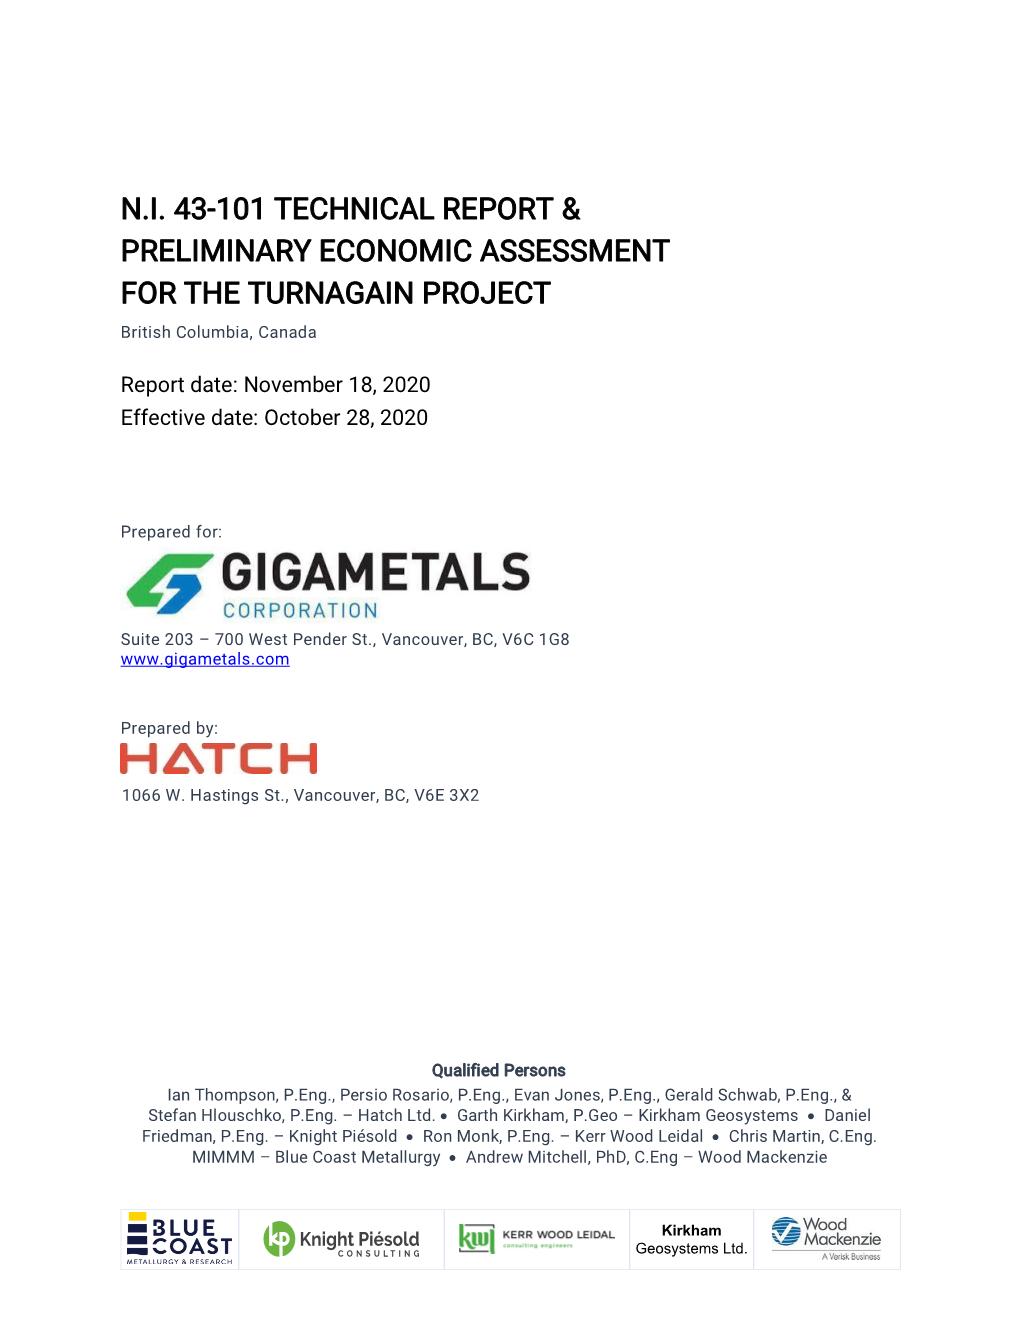 NI 43-101 Preliminary Economic Assessment Report